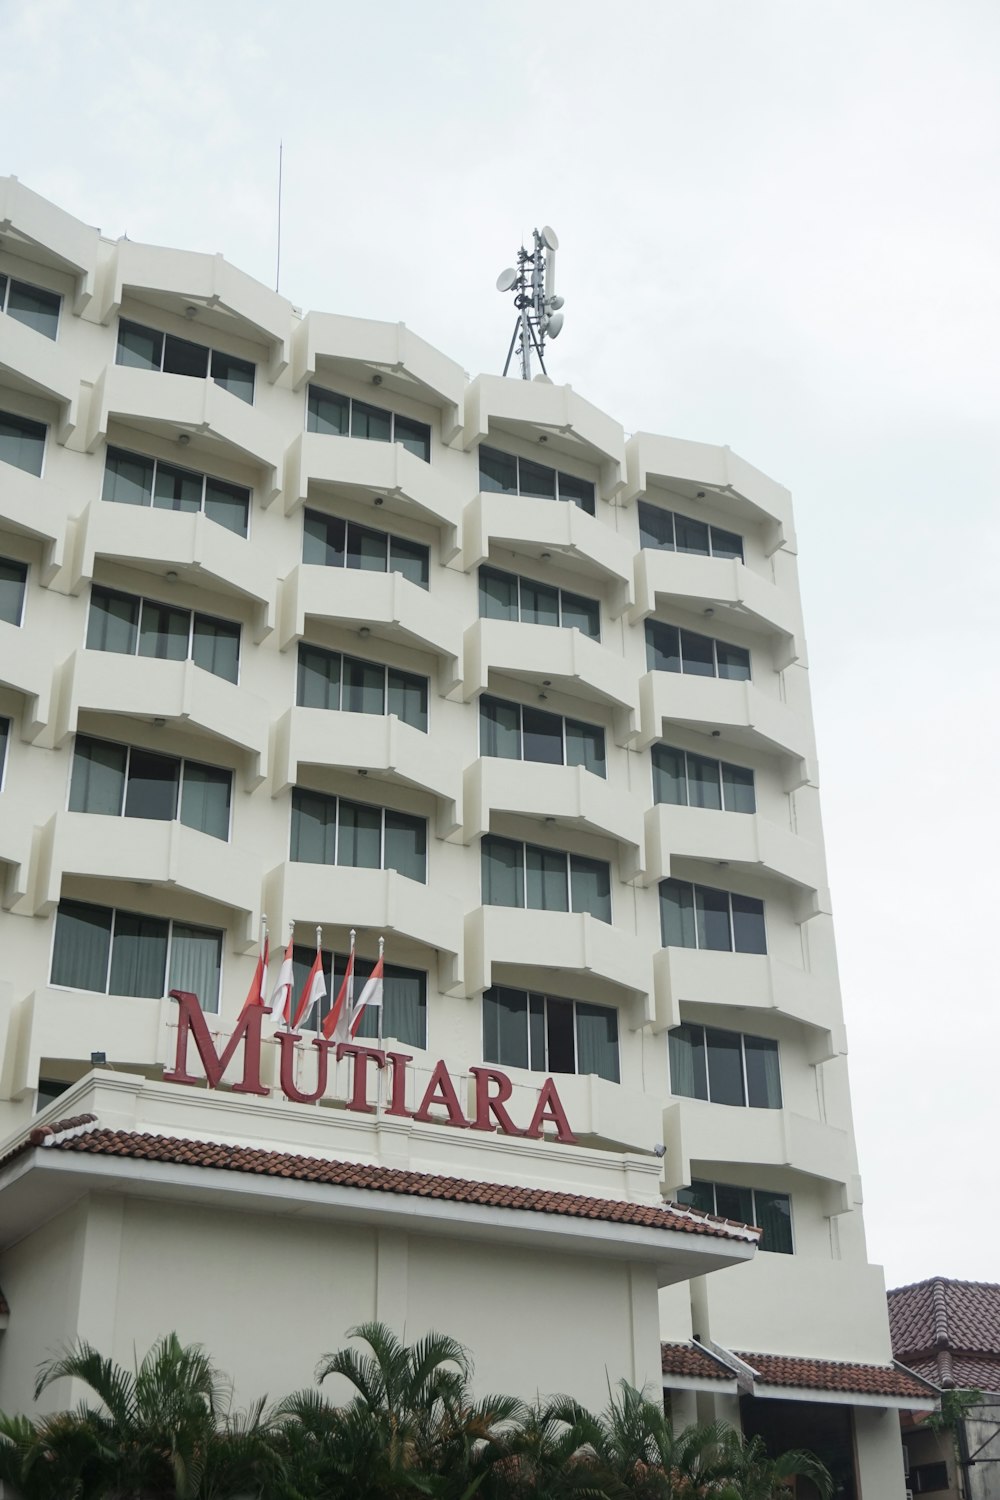 Mutiara building